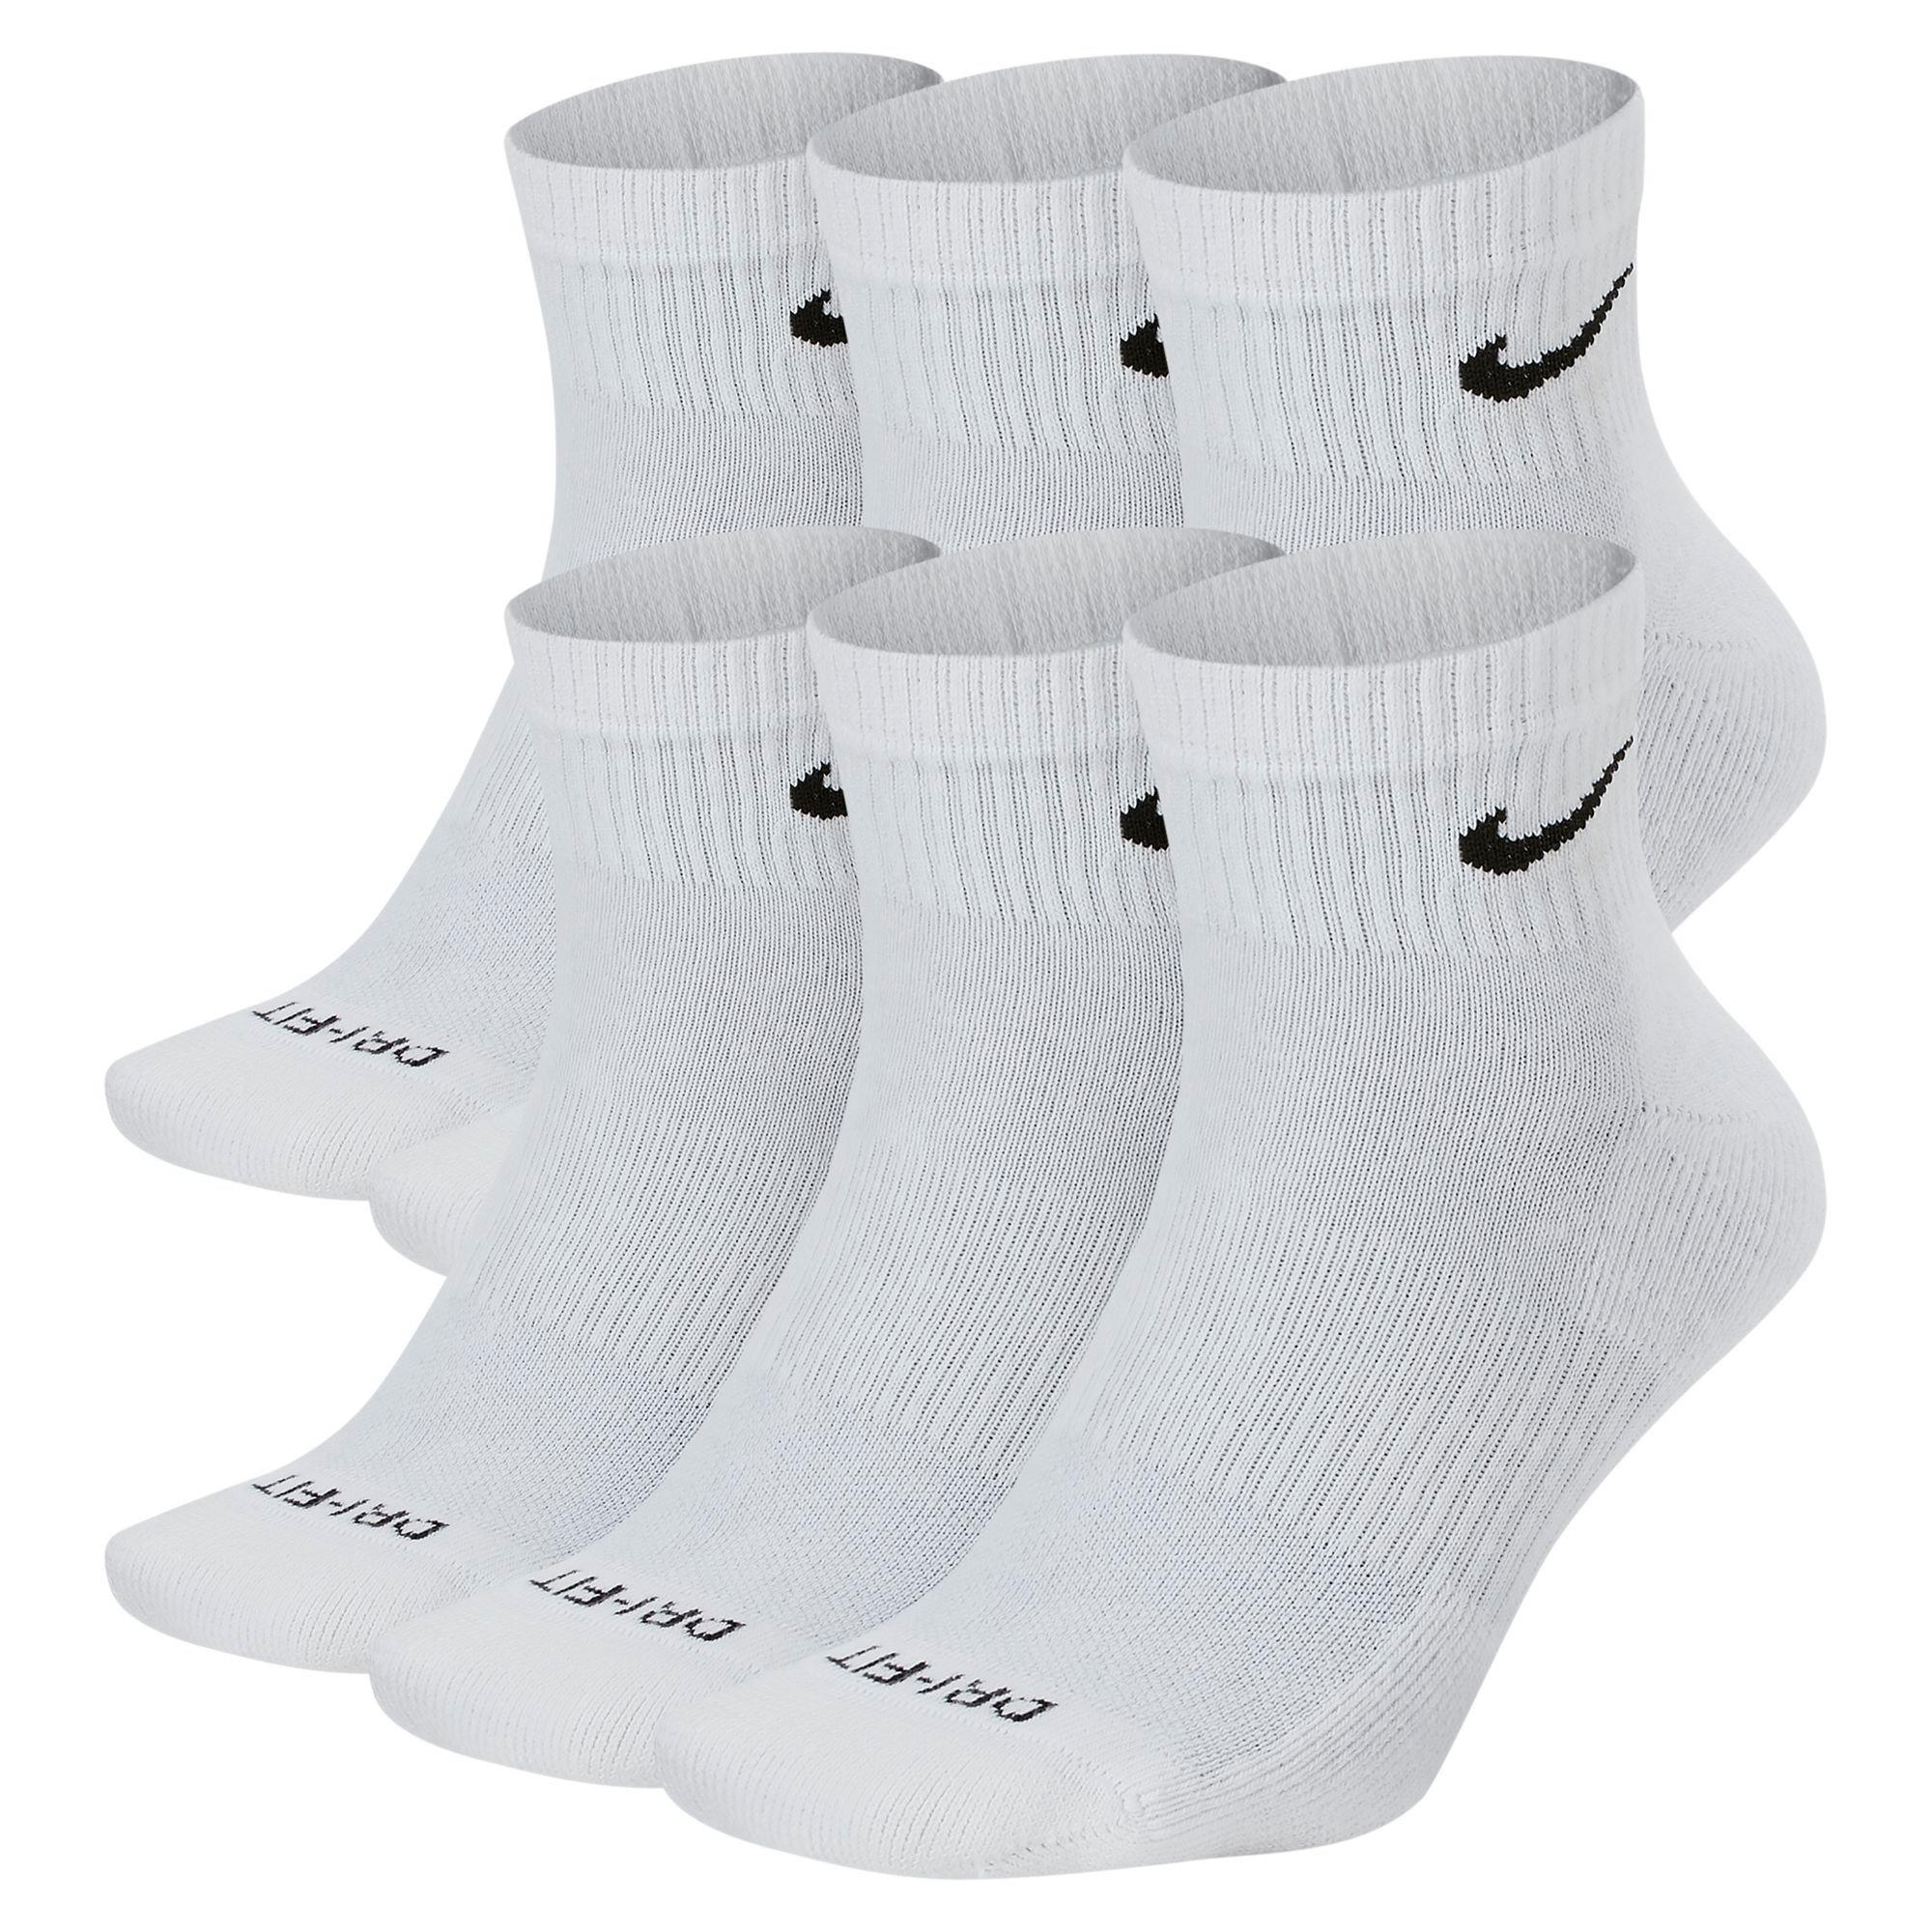 Nike Everyday Cushion Crew Training Socks, Unisex Nike Socks with  Sweat-Wicking Technology and Impact Cushioning (3 Pair), White/Black,  Medium 